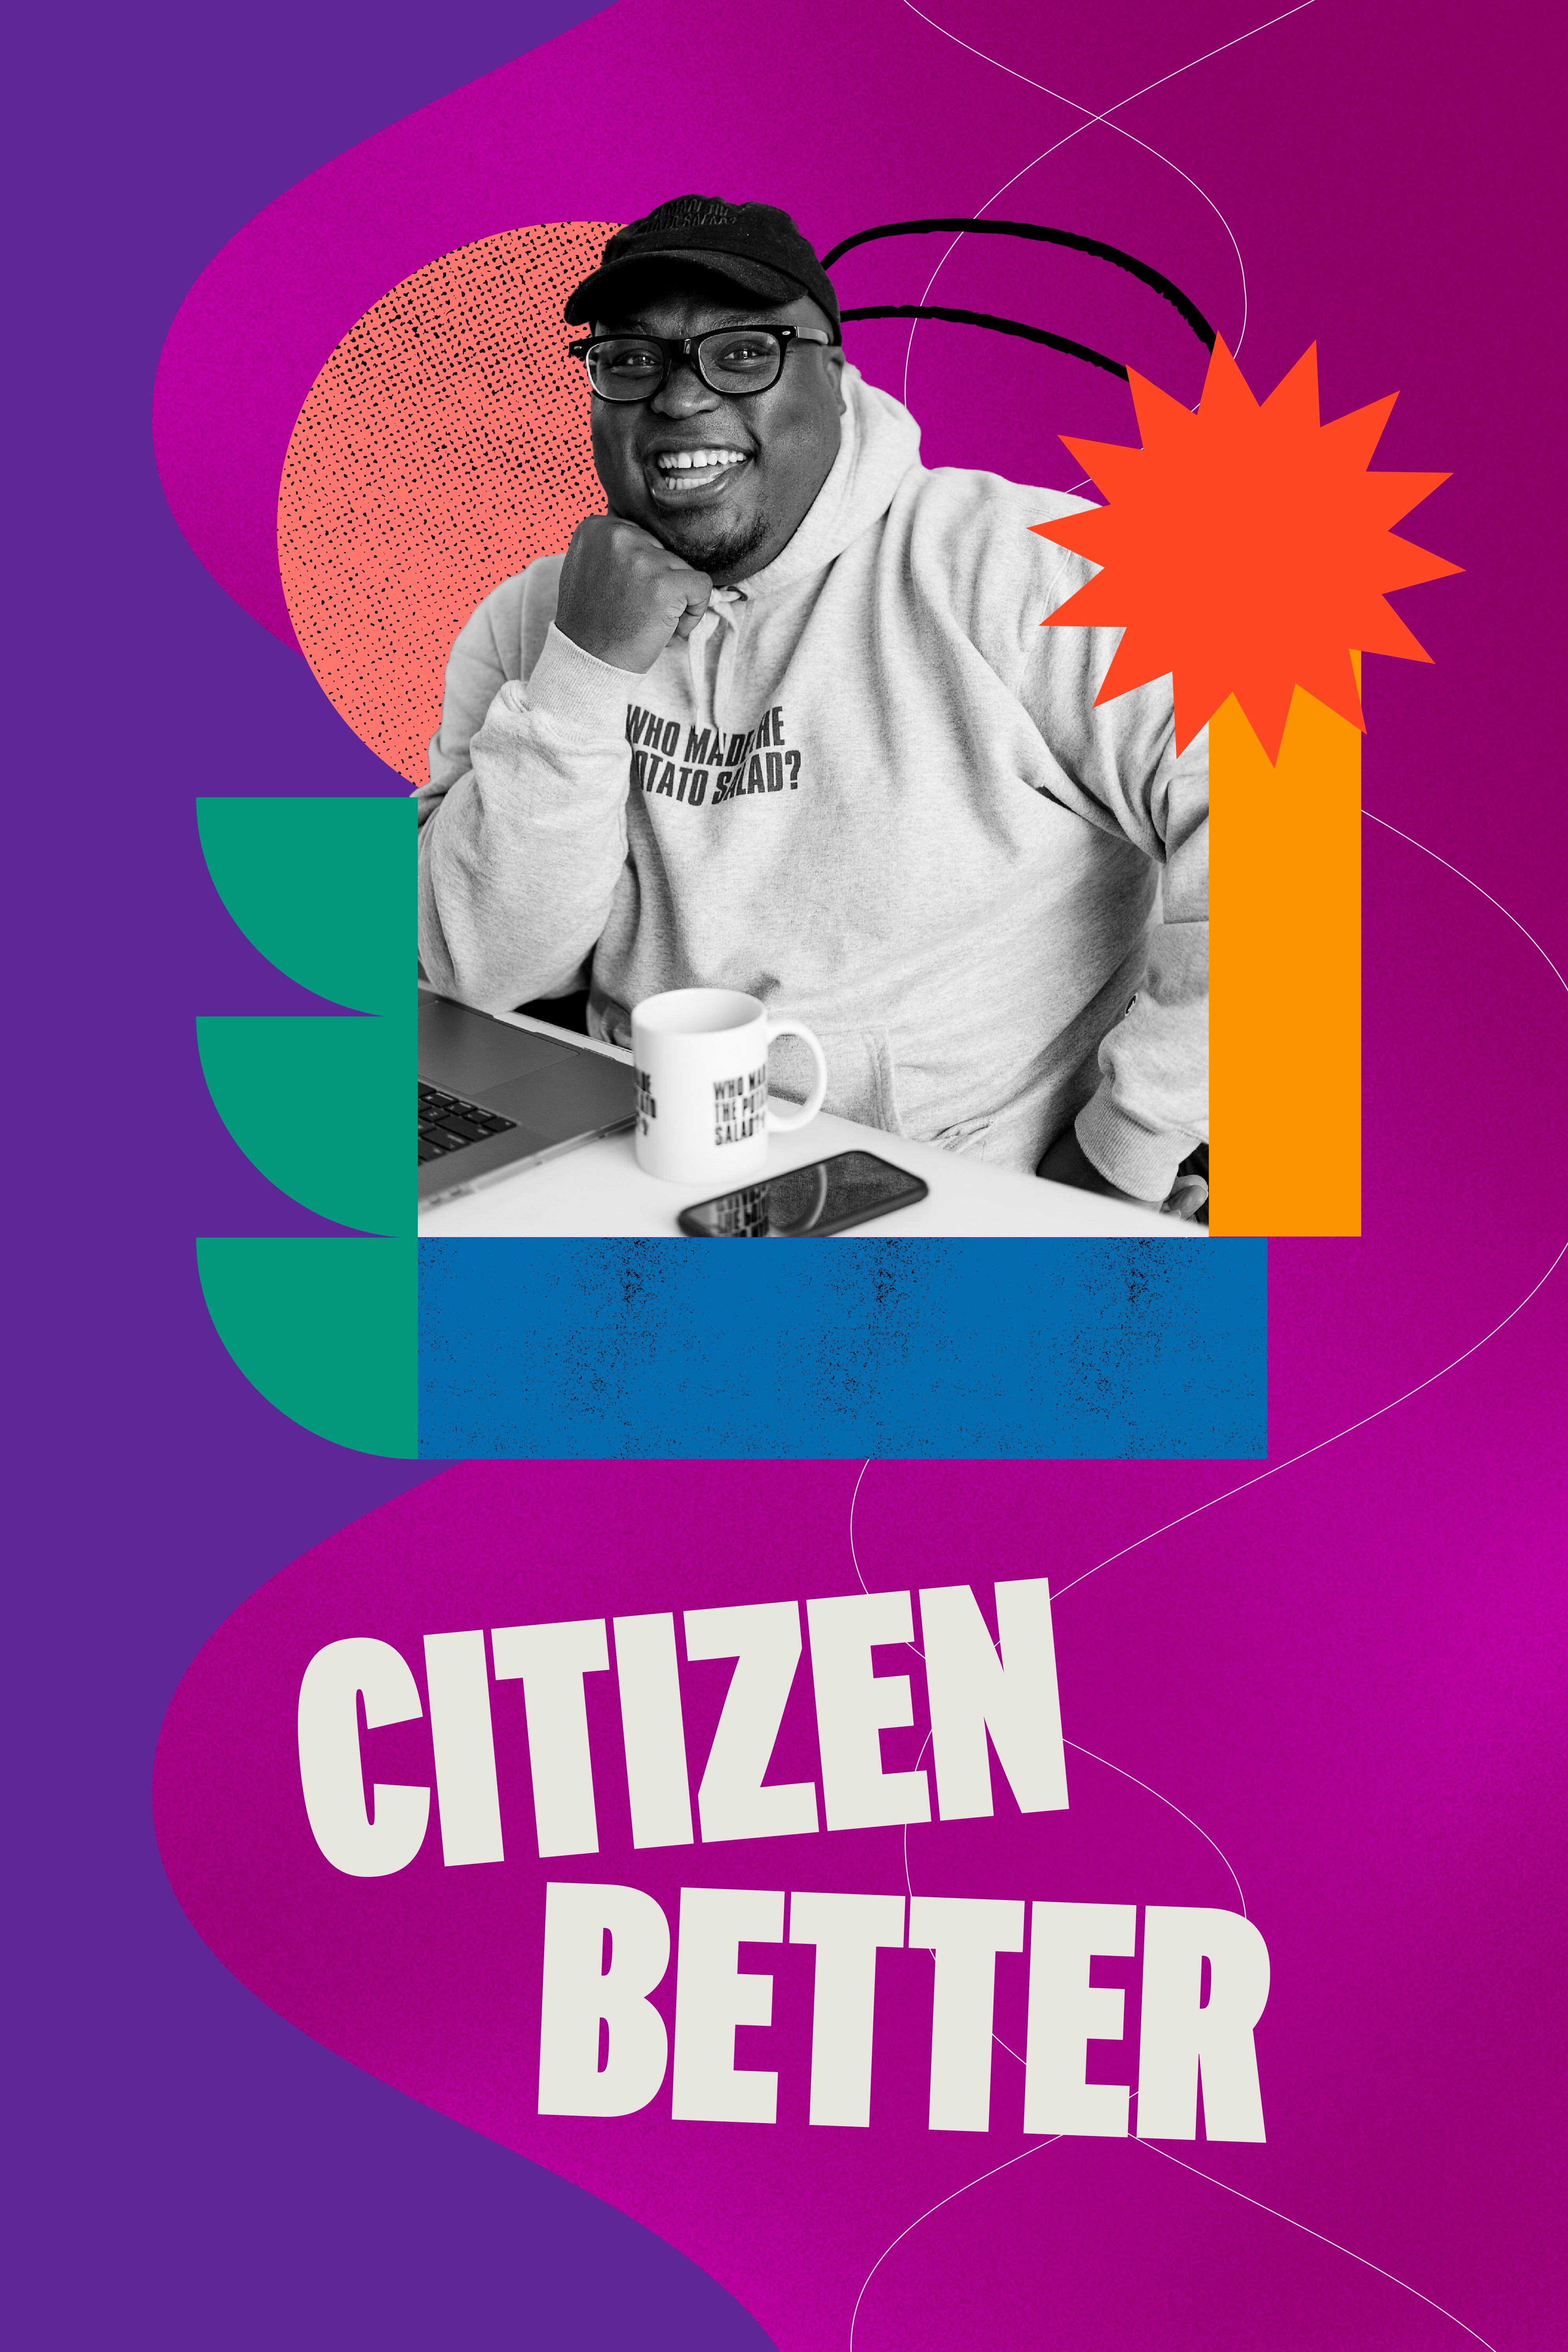 Citizen Better